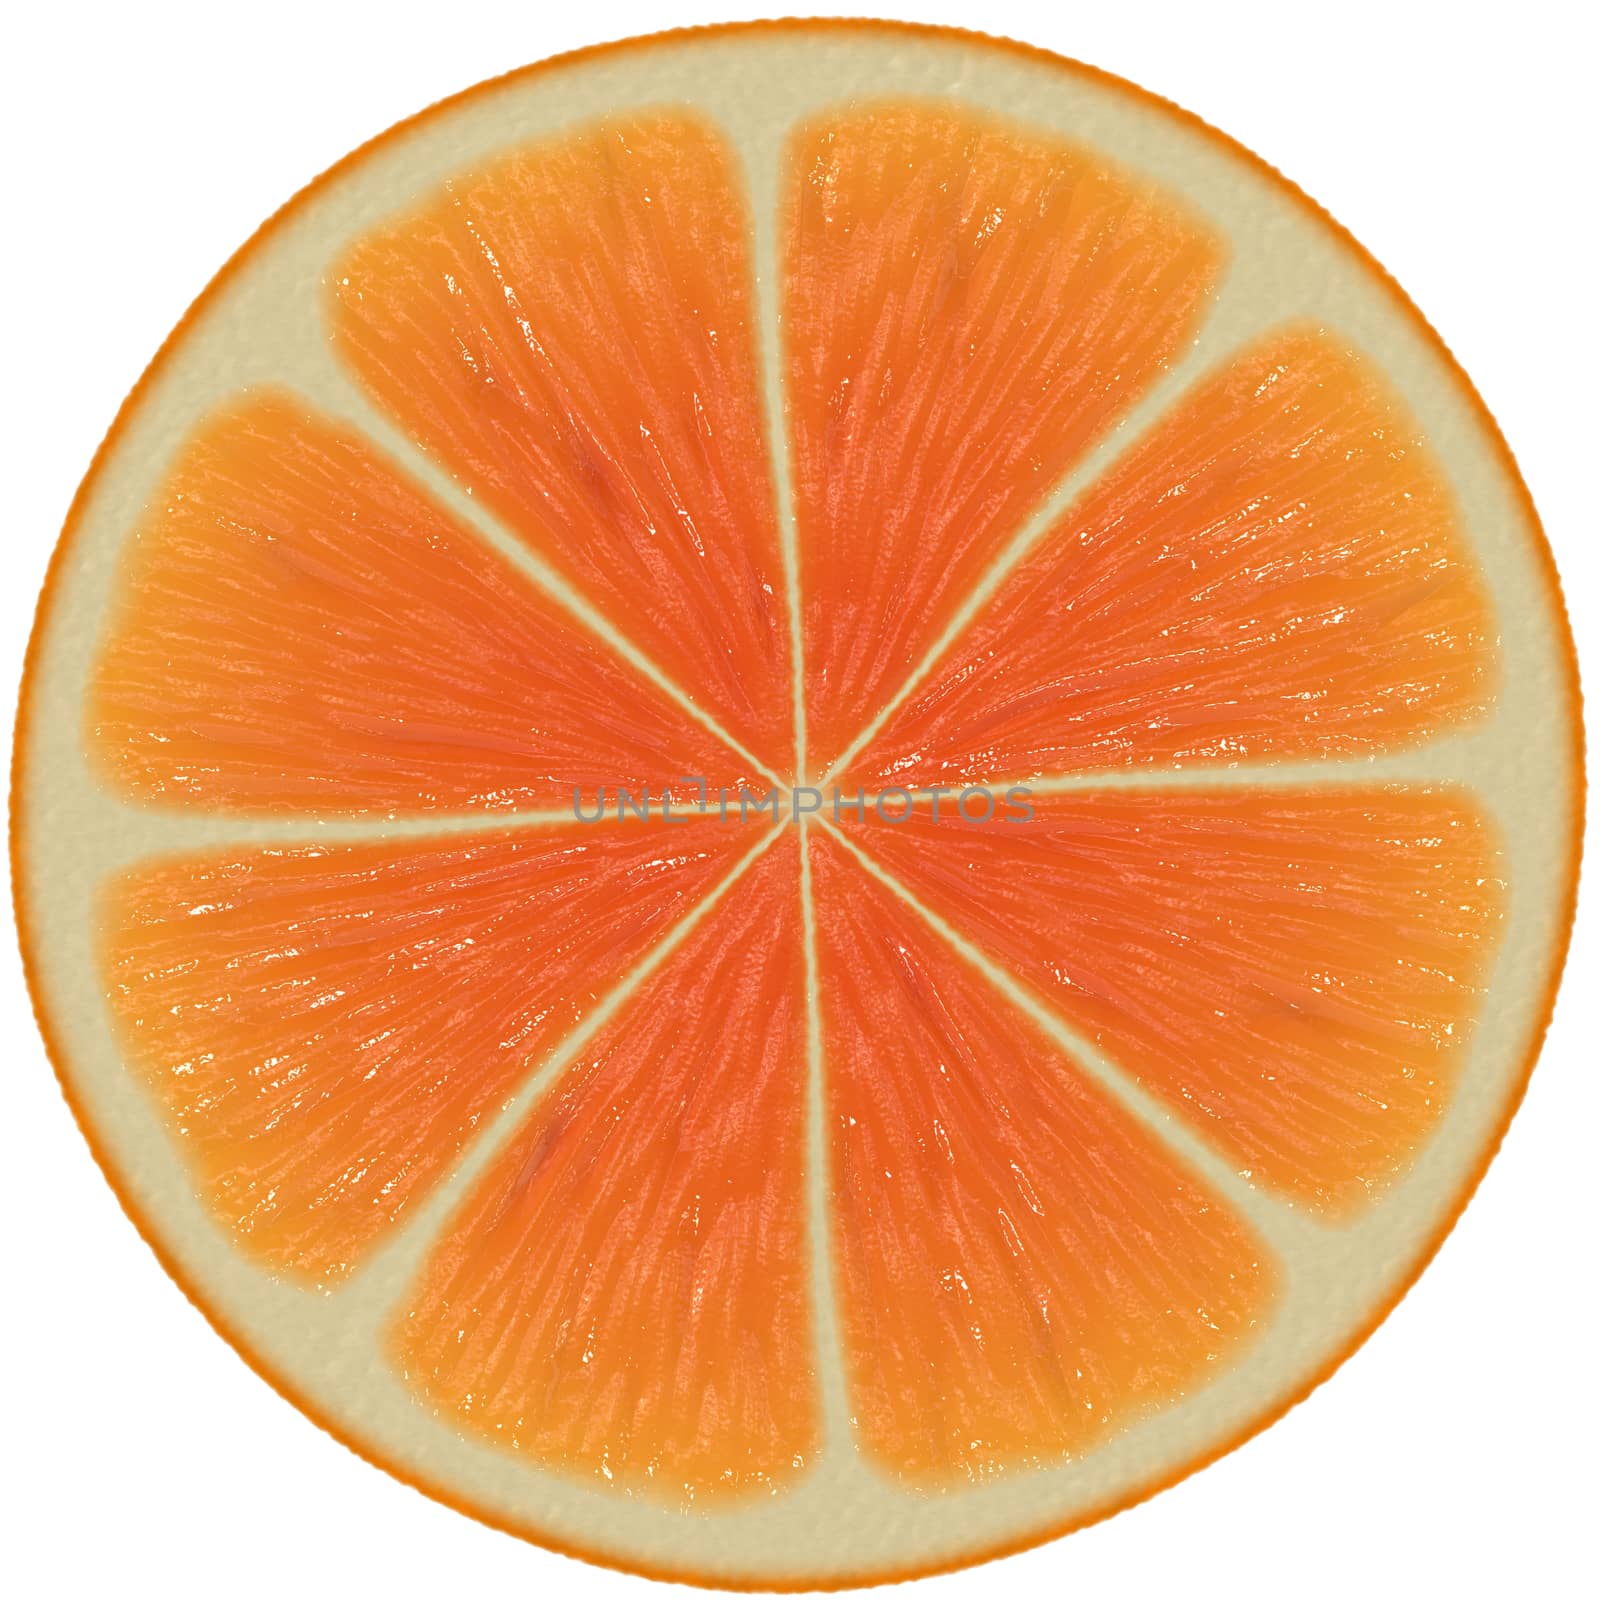 Sliced orange isolated on white background by Attila